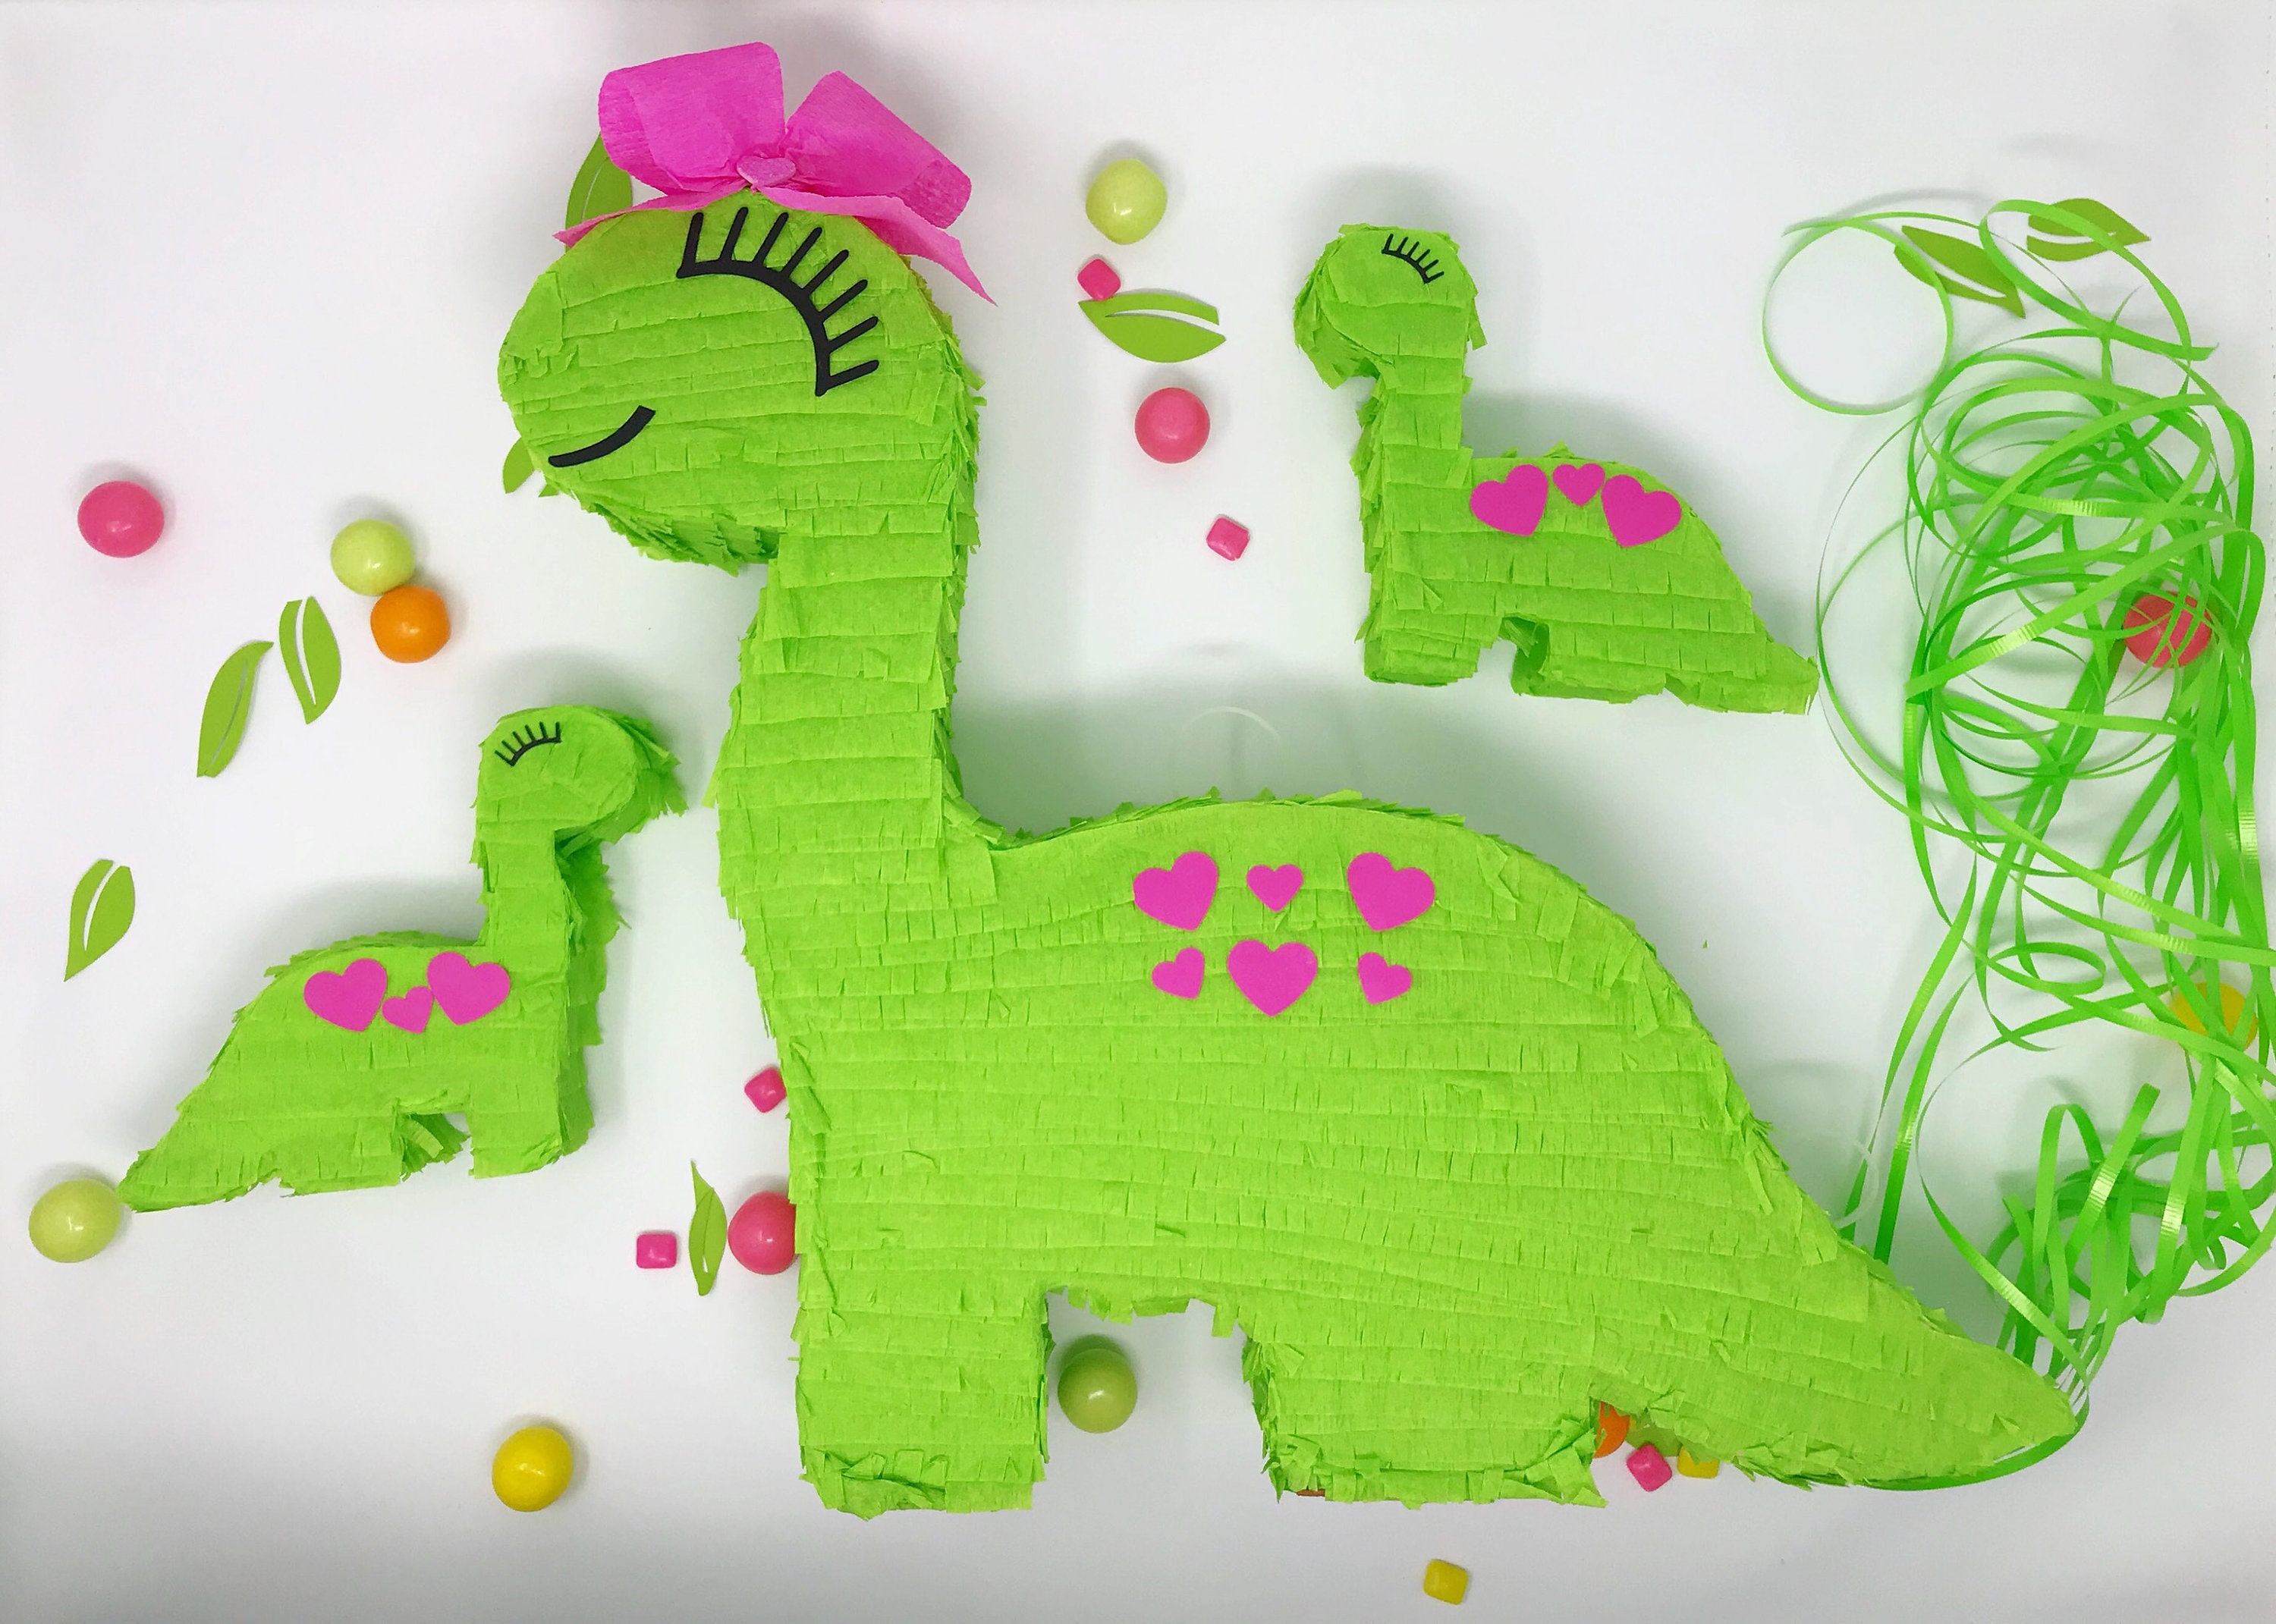 Grande piñata Dinosaure – La Fiesta Ideal